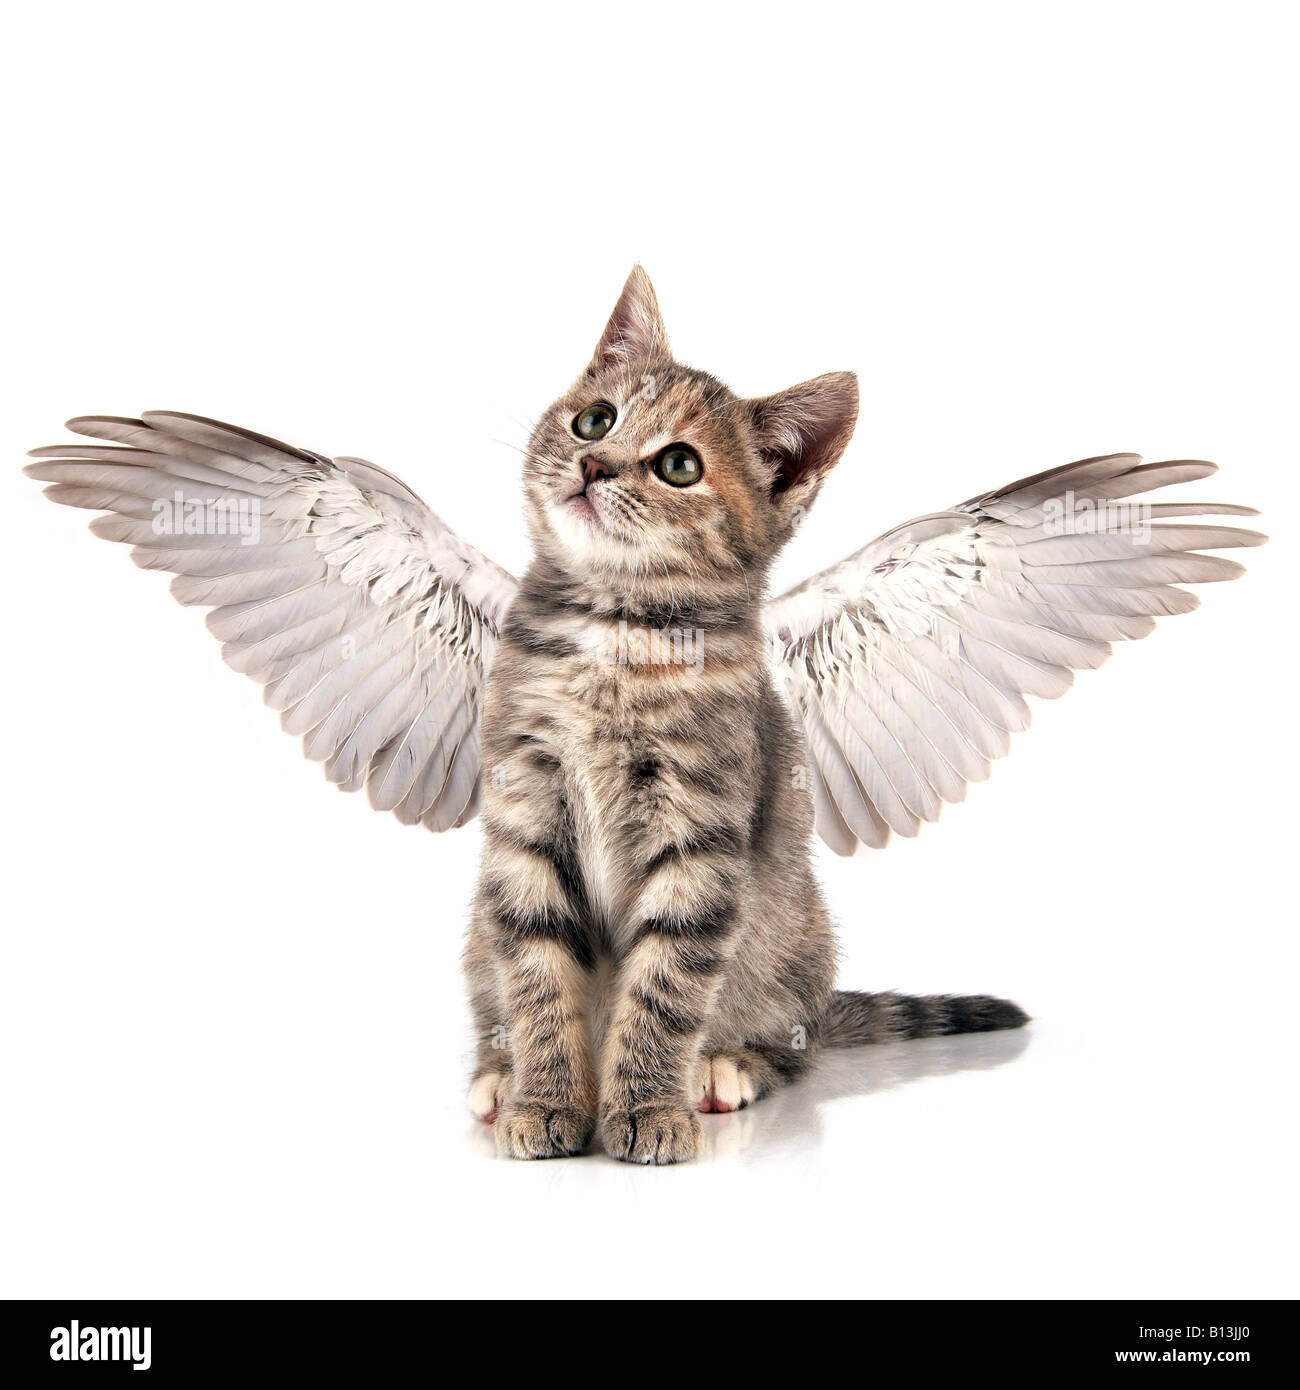 Angel kitten Stock Photo